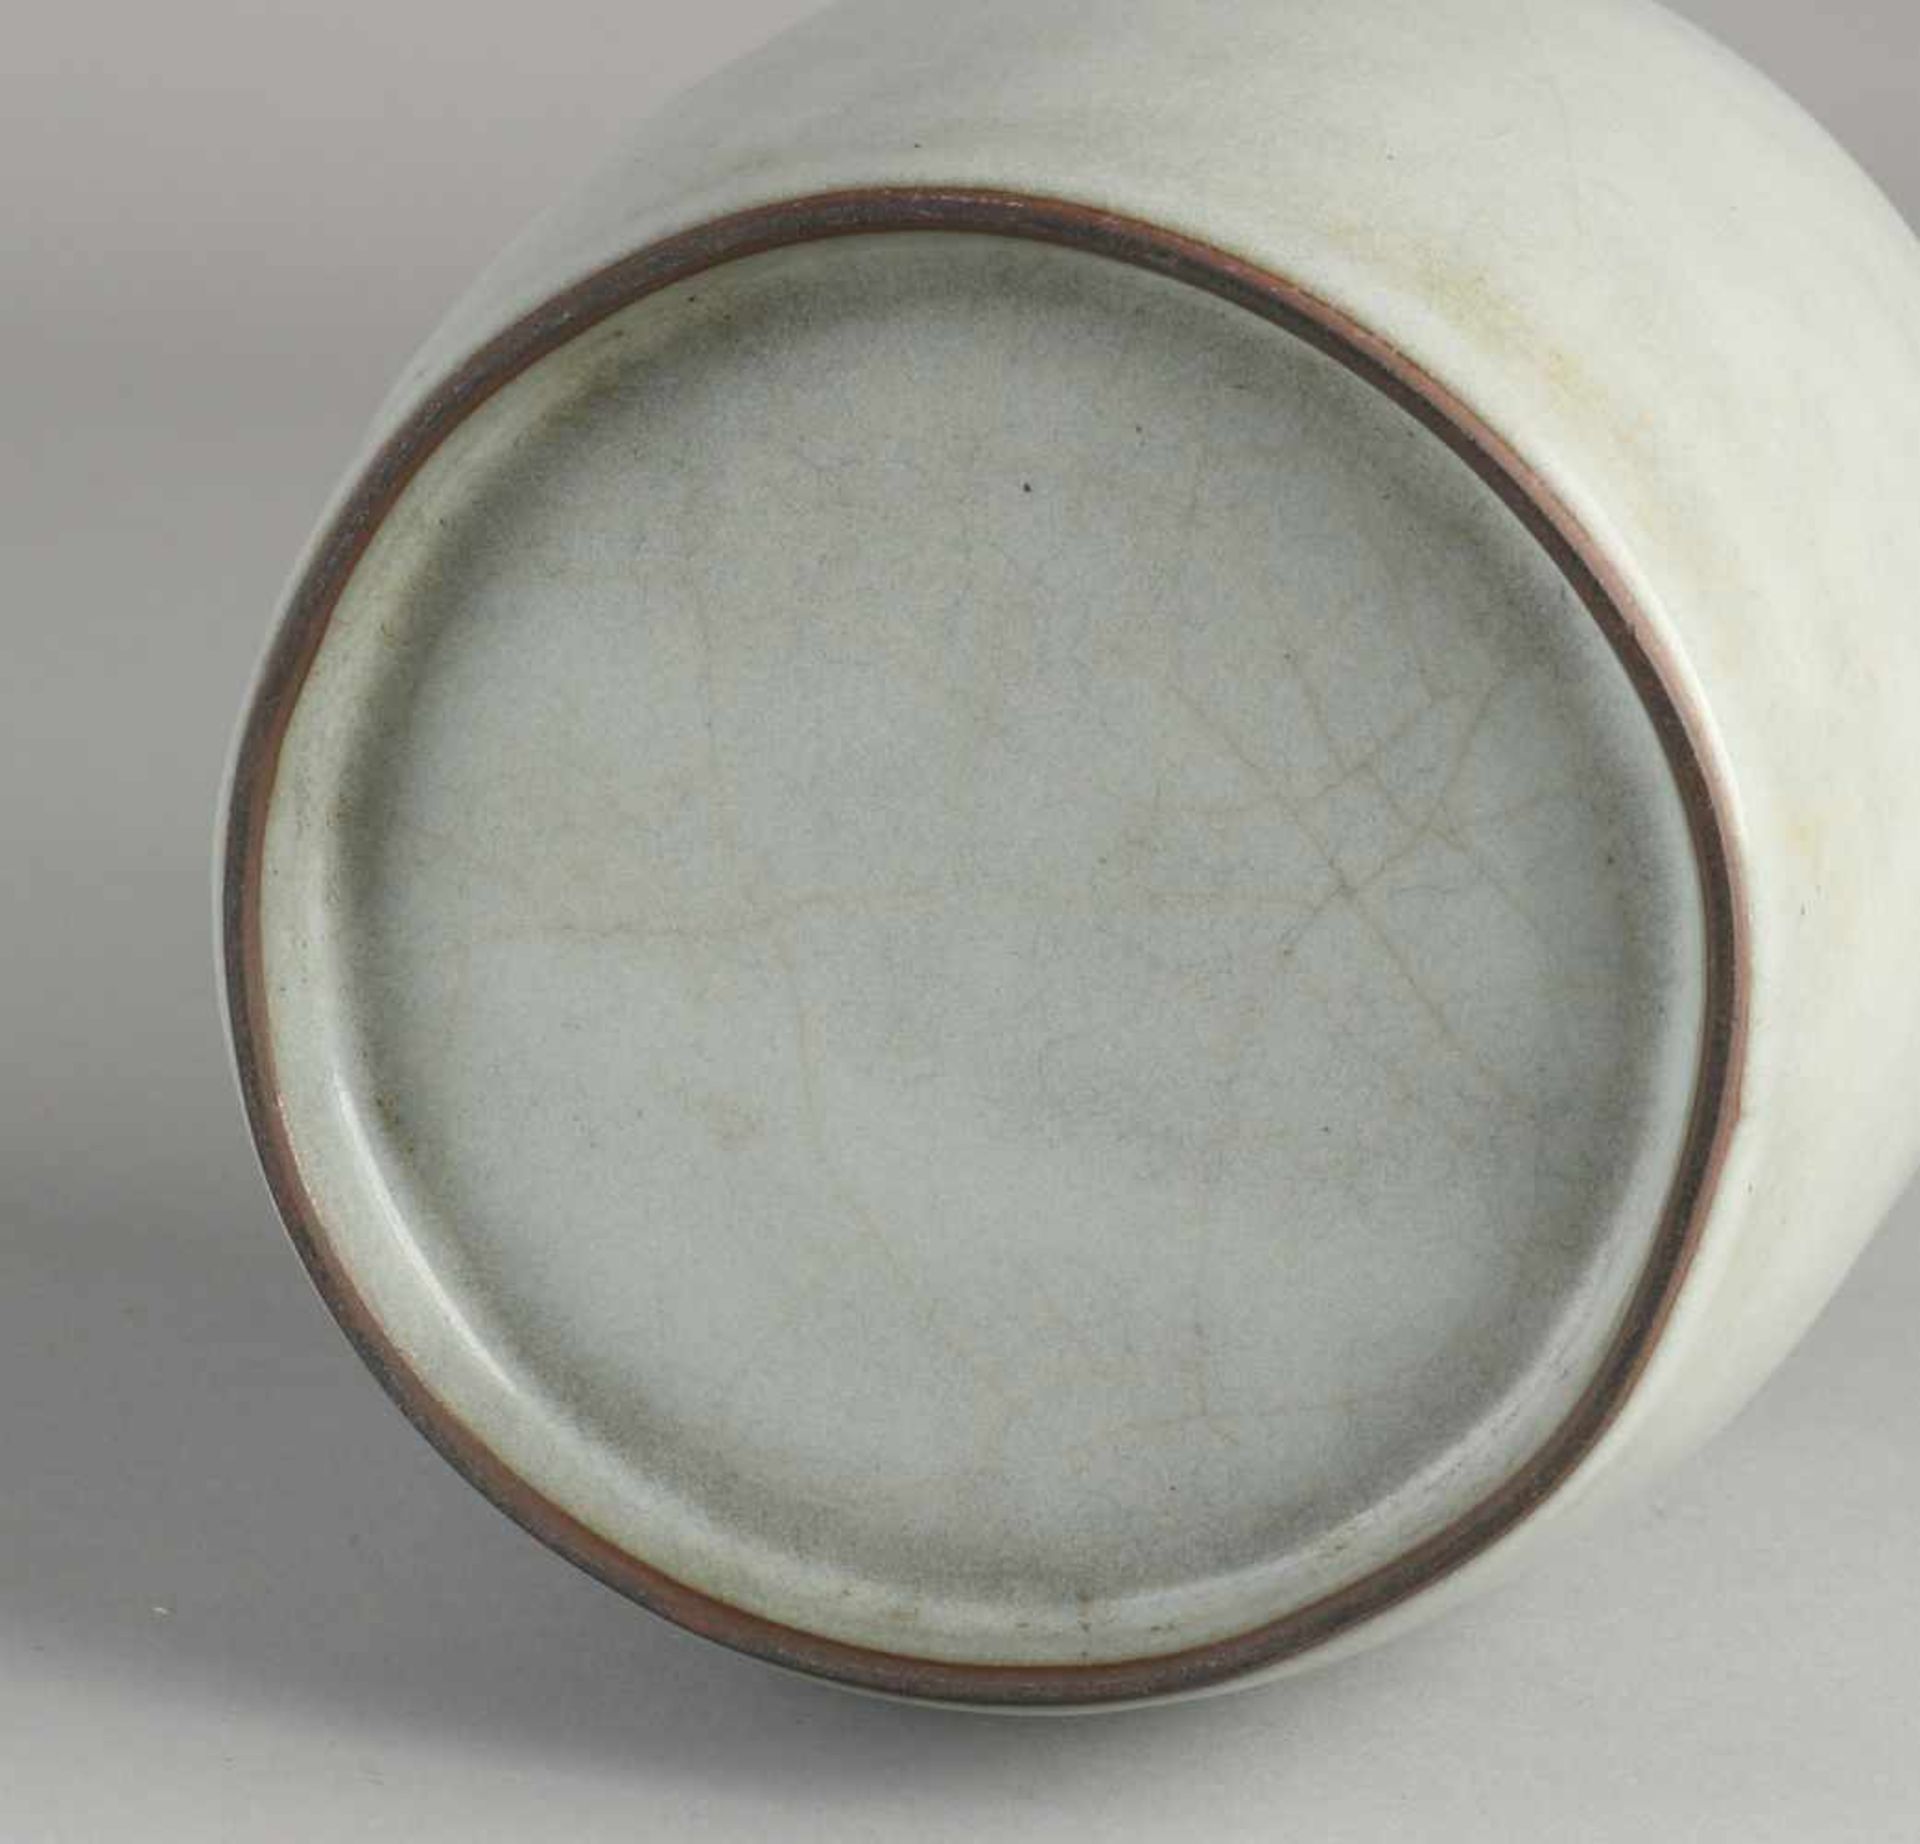 Chinesische Porzellanflaschenvase mit grauer Glasur. Abmessungen: H 23 cm. In guter Kondition. - Bild 2 aus 2